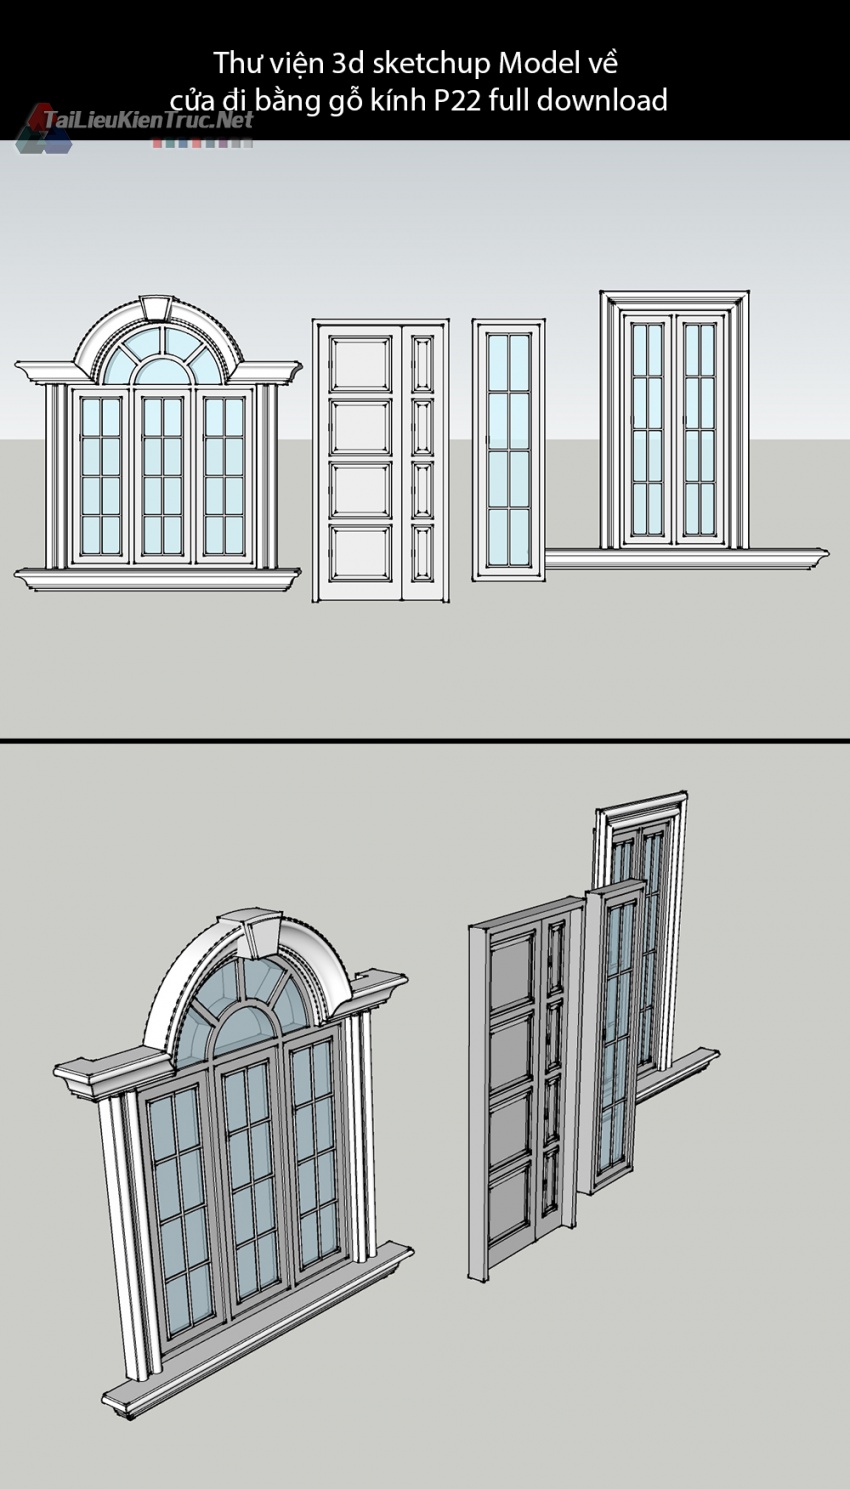 Thư viện 3d sketchup Model về cửa đi bằng gỗ kính P22 full download